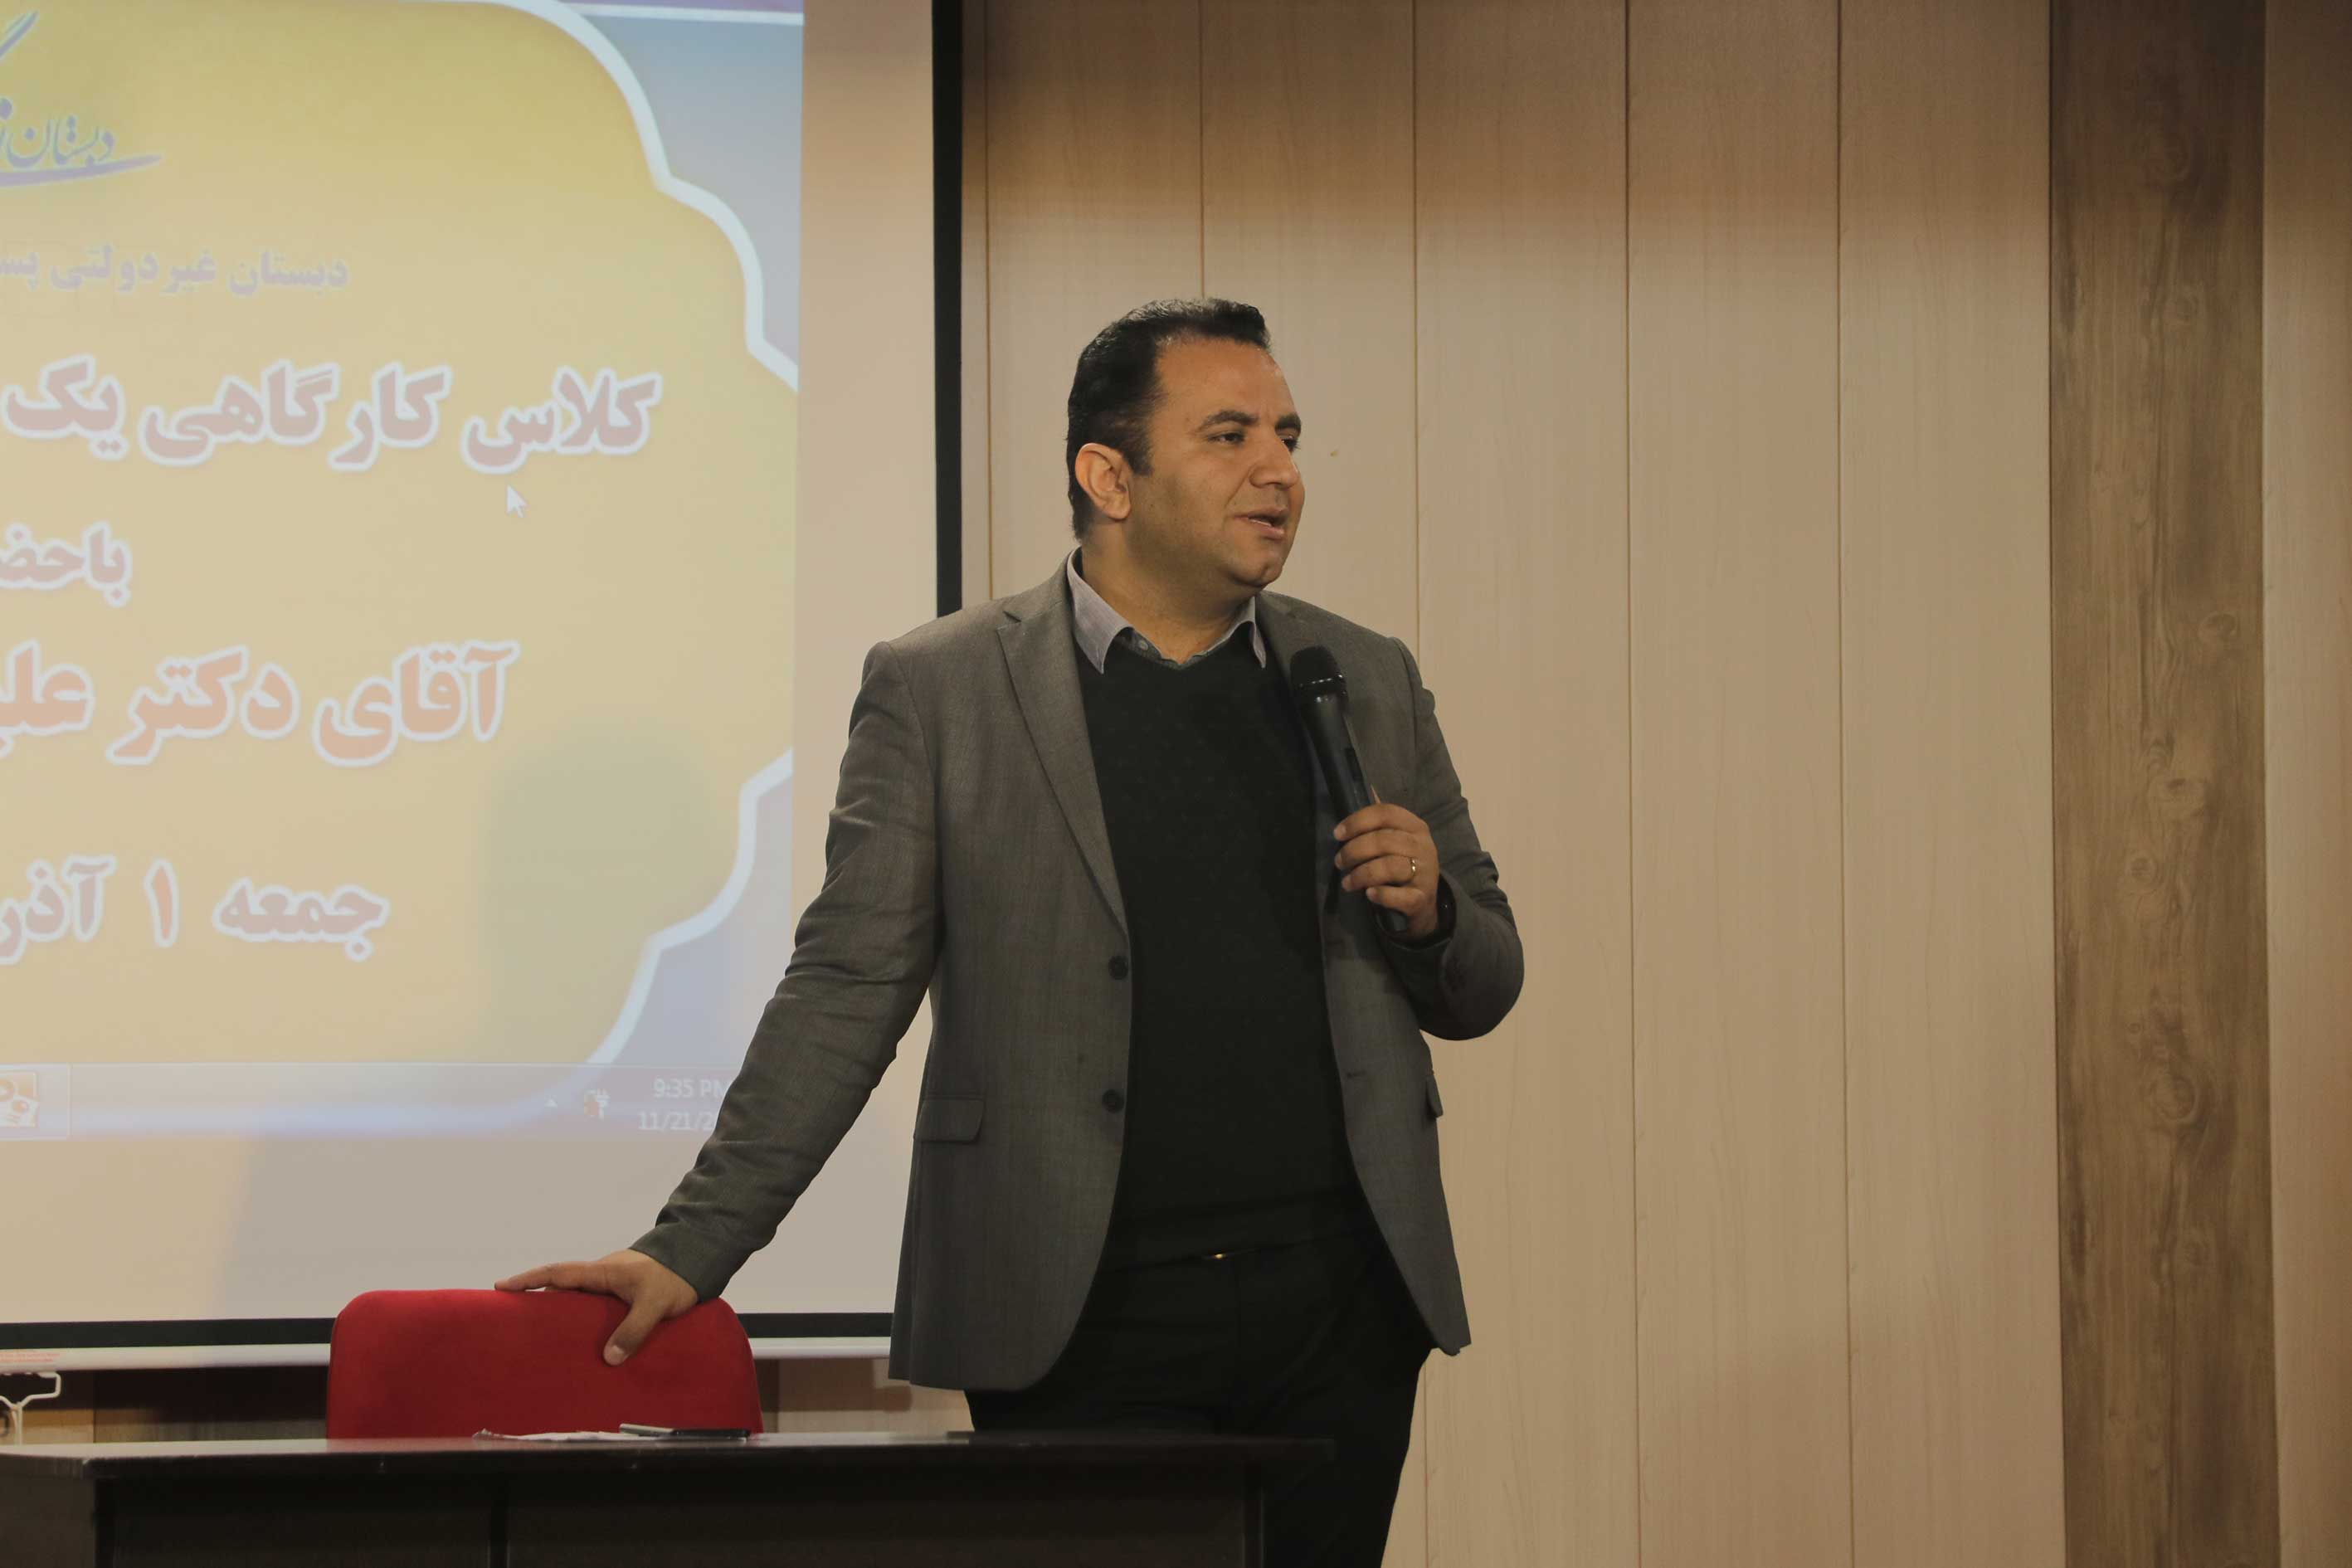 برگزاری جلسه کارگاهی با حضور دکتر مصطفی تبریزی